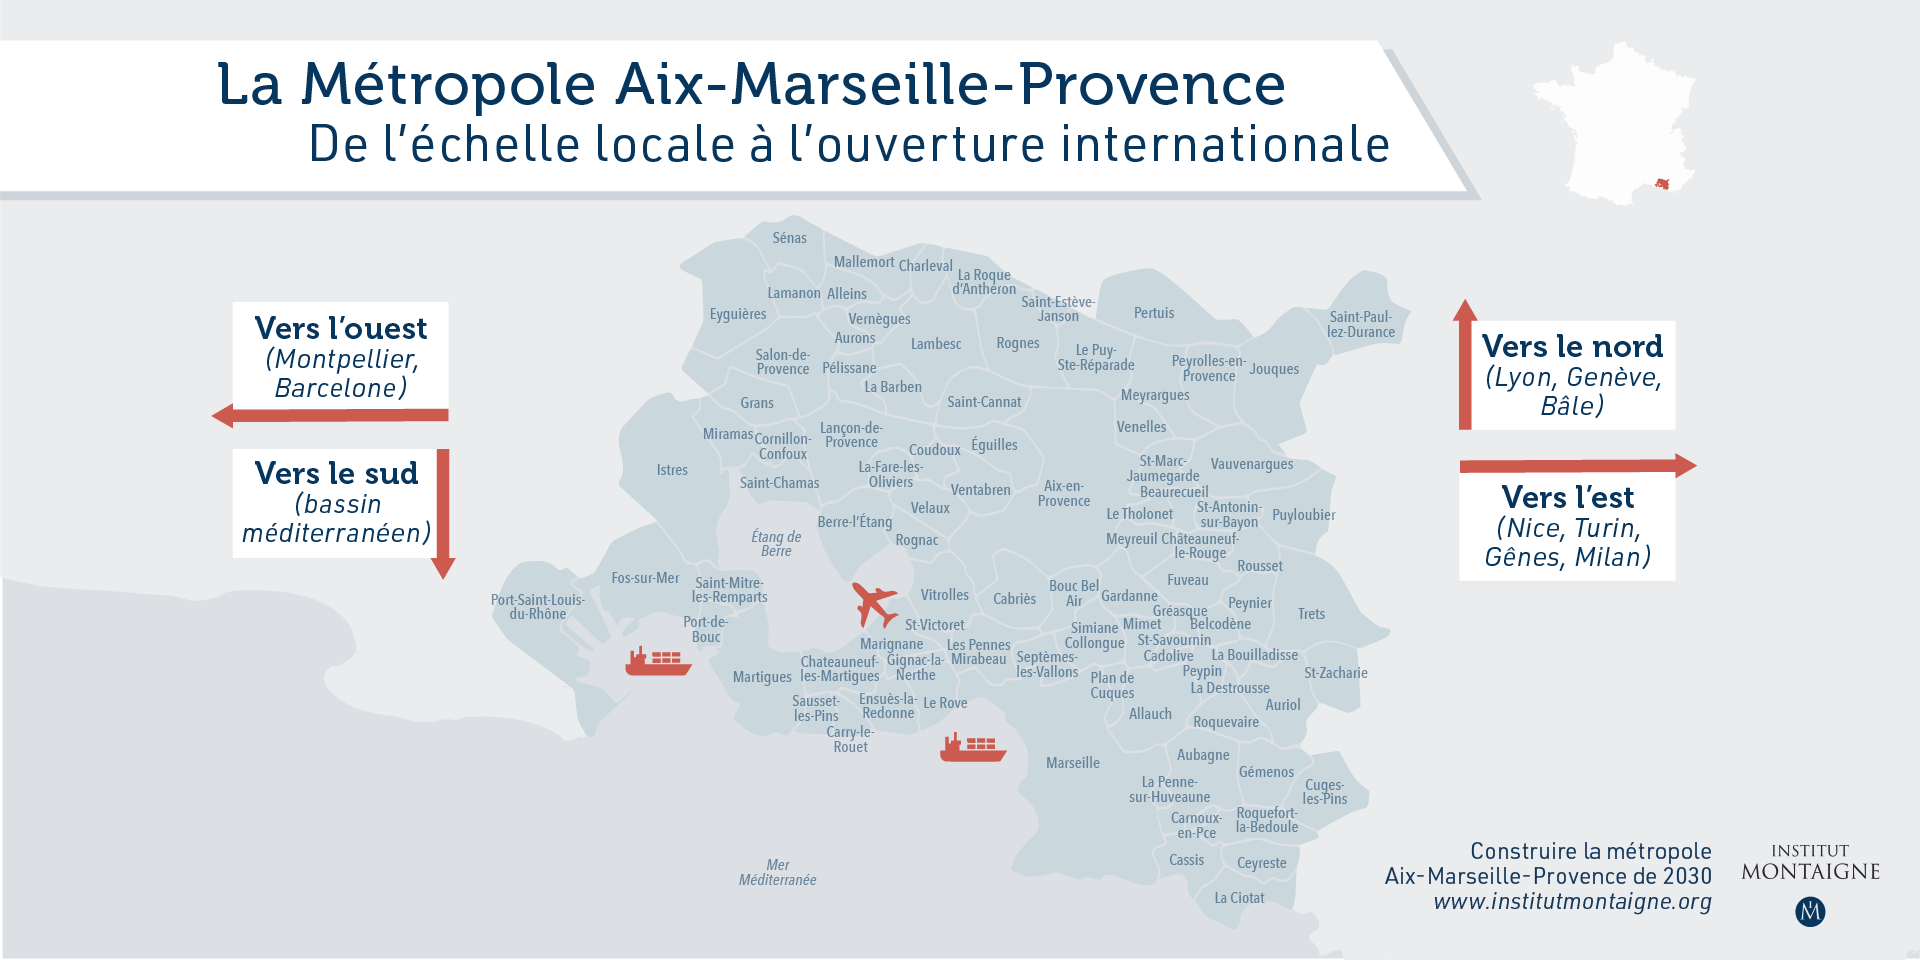 Construire la métropole Aix-Marseille-Provence de 2030 - De l'échelle locale à l'ouverture internationale